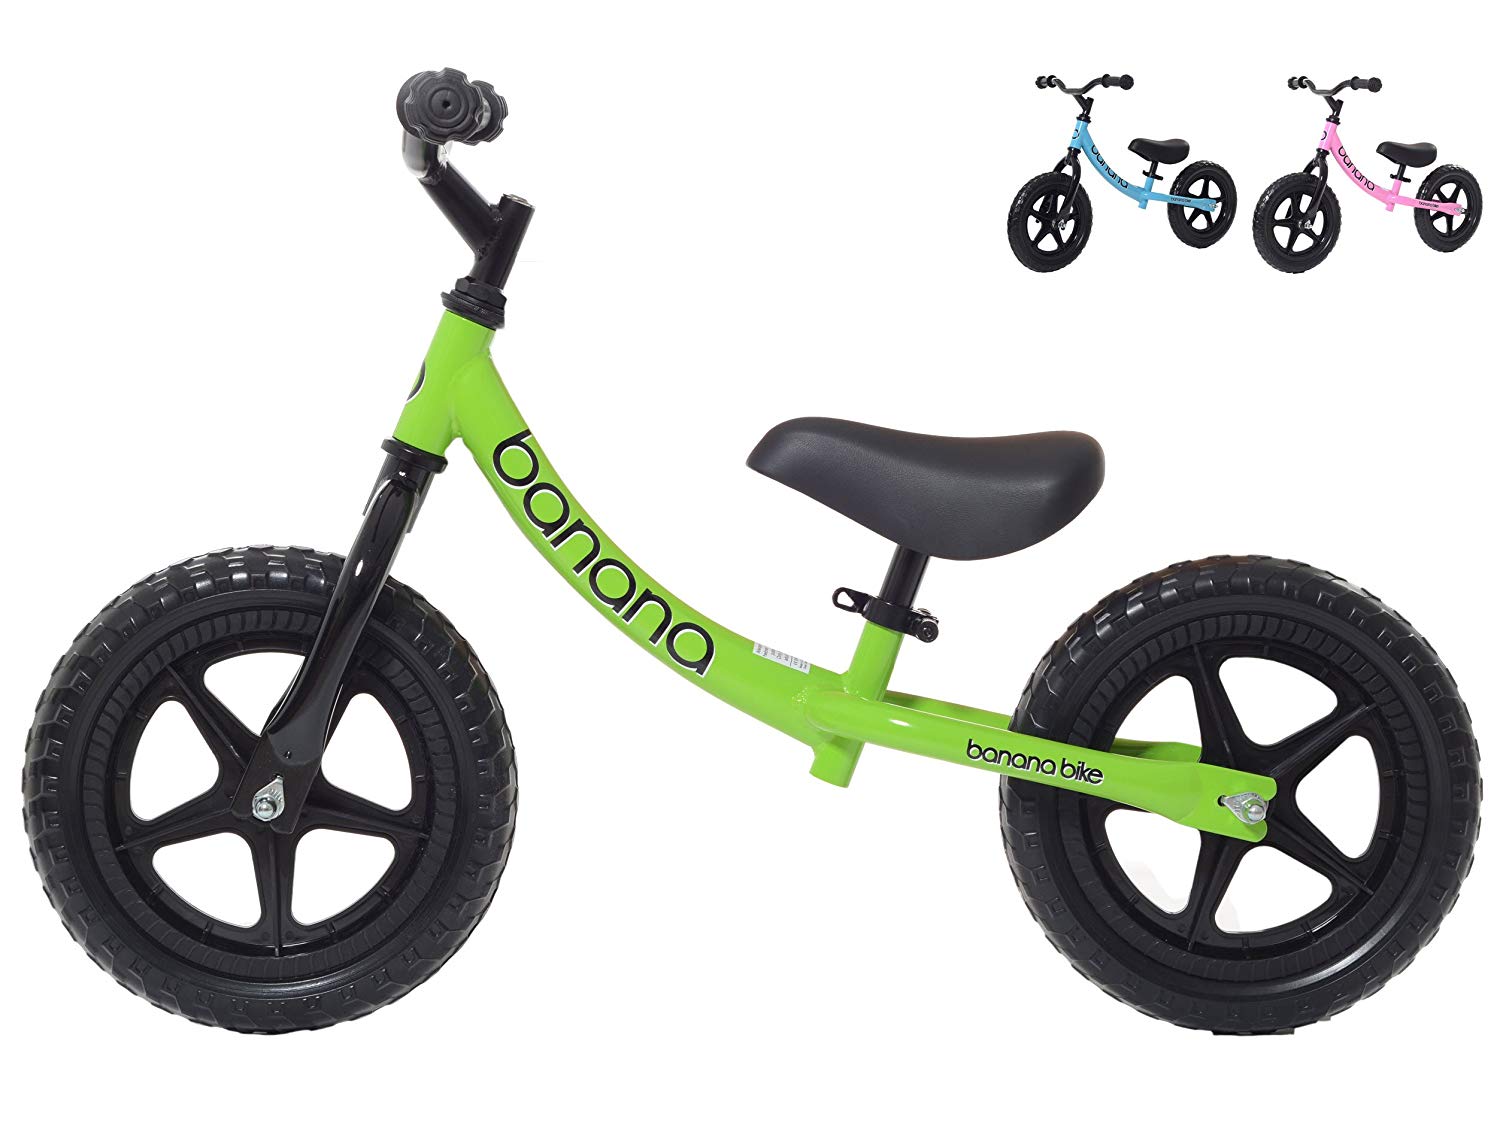 Banana Bike LT Lightweight Balance Bike for Kids